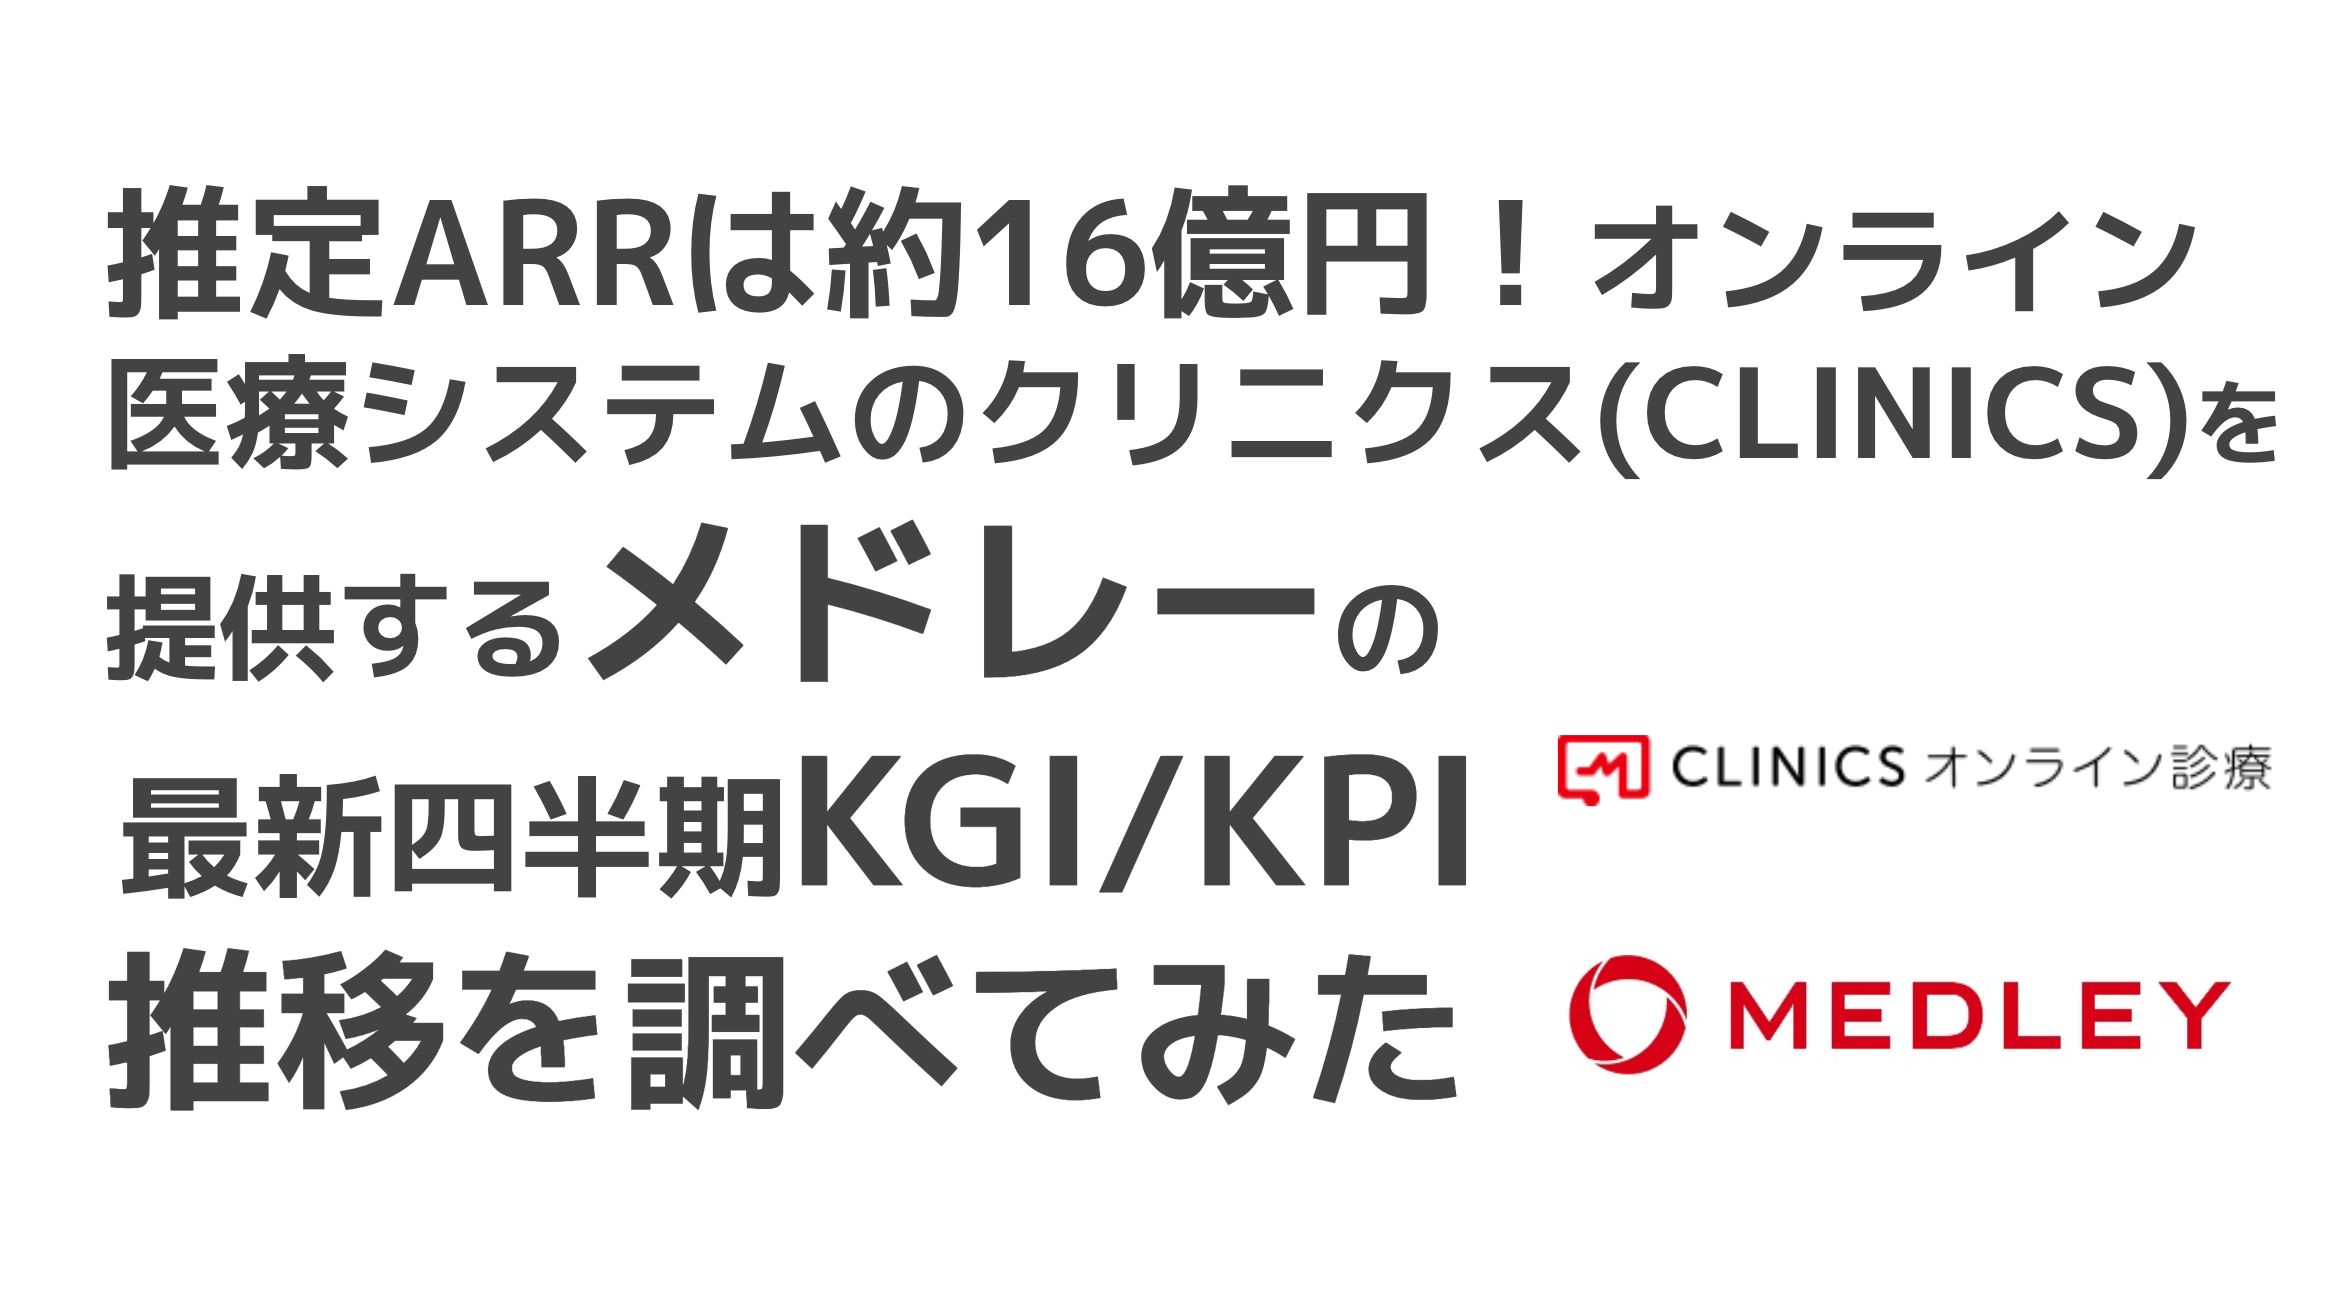 saaslife_推定ARRは約16億円！オンライン医療システムのクリニクス(CLINICS)を提供するメドレーの最新四半期KGI/KPI推移を調べてみた